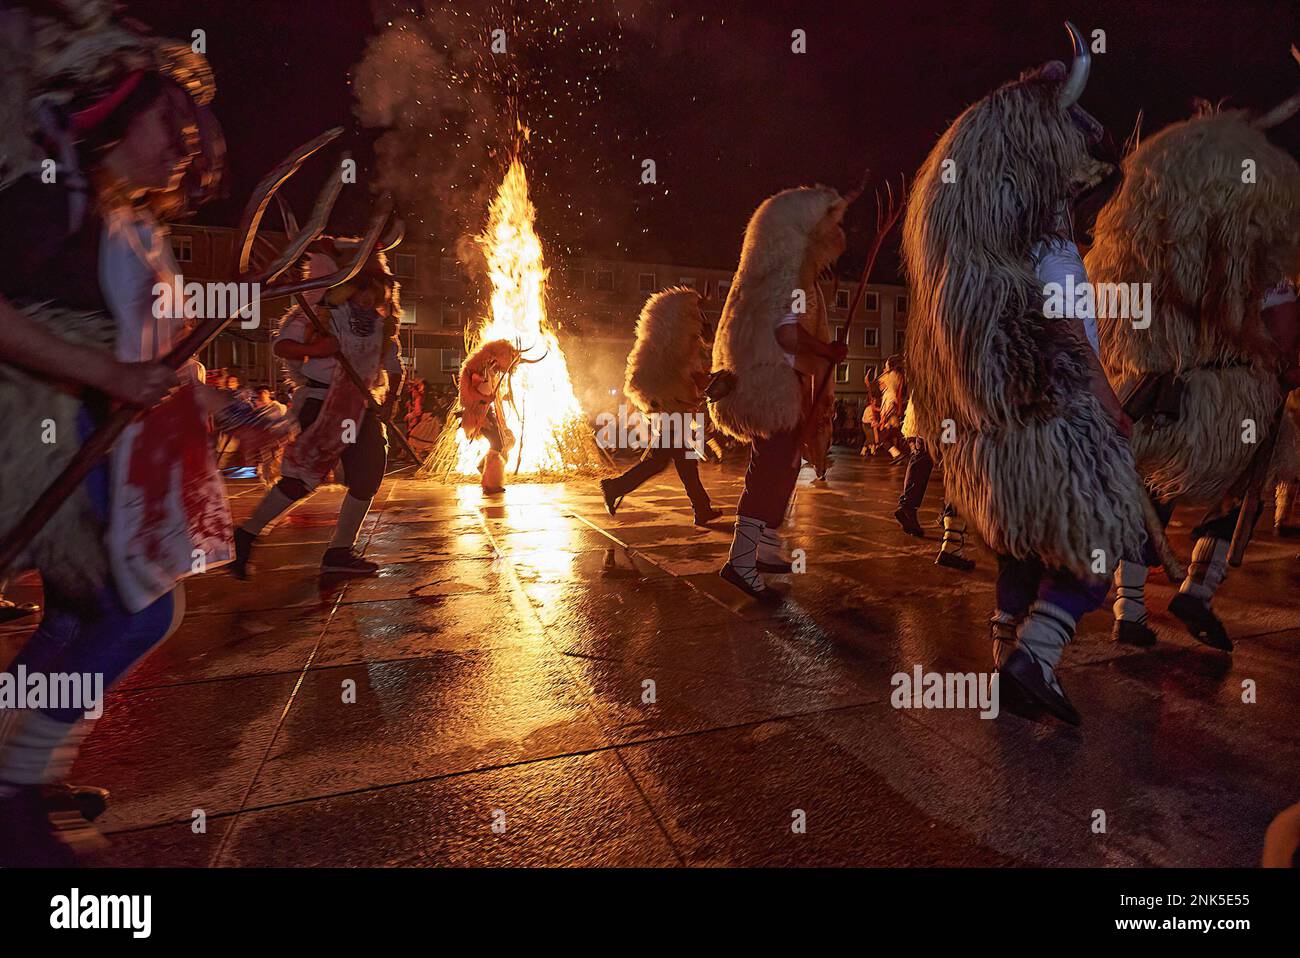 20. Februar 2023, Alsasua, Navarra, Spanien: Die Momotxorros tanzen während des karnevals von Alsasua um das Feuer. Der Karneval umfasst den Momotxorro, einen Charakter unbekannter Herkunft, halb Mensch und halb Stier, der Angst macht und "angreift", wer ihm im Weg steht. (Kreditbild: © Elsa A Bravo/SOPA Images via ZUMA Press Wire) NUR REDAKTIONELLE VERWENDUNG! Nicht für den kommerziellen GEBRAUCH! Stockfoto